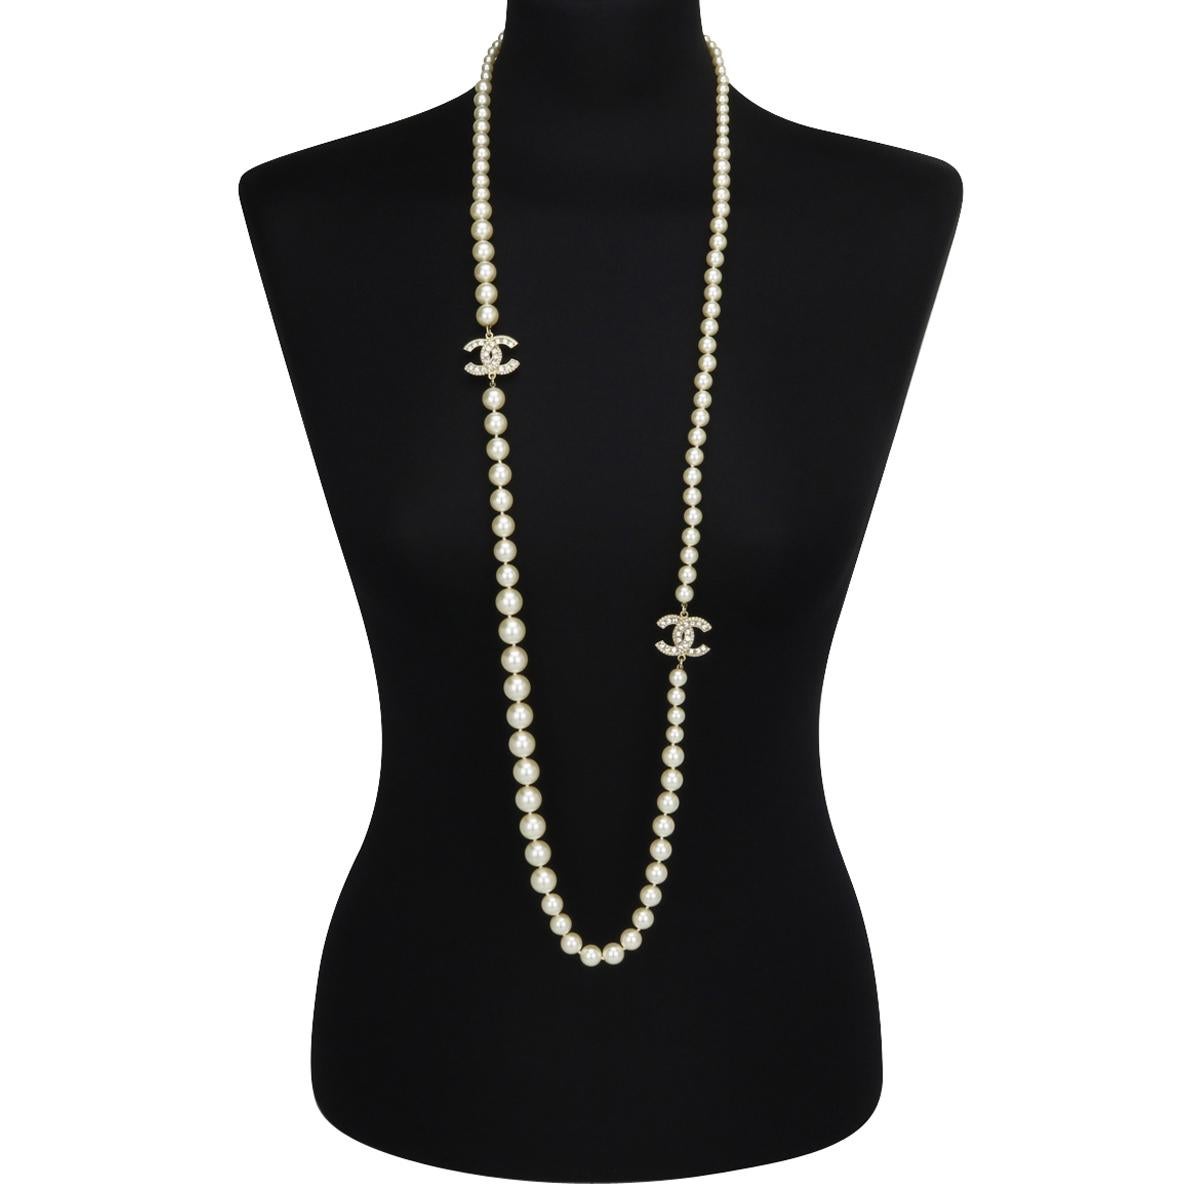 Authentische CHANEL CC Faux Perle Kristall Gold lange Halskette 2016 (A16 V).

Diese atemberaubende lange Halskette ist in tadellosem Zustand.

Es besteht aus exquisiten Barockperlen in verschiedenen Größen, mit großen, ineinandergreifenden